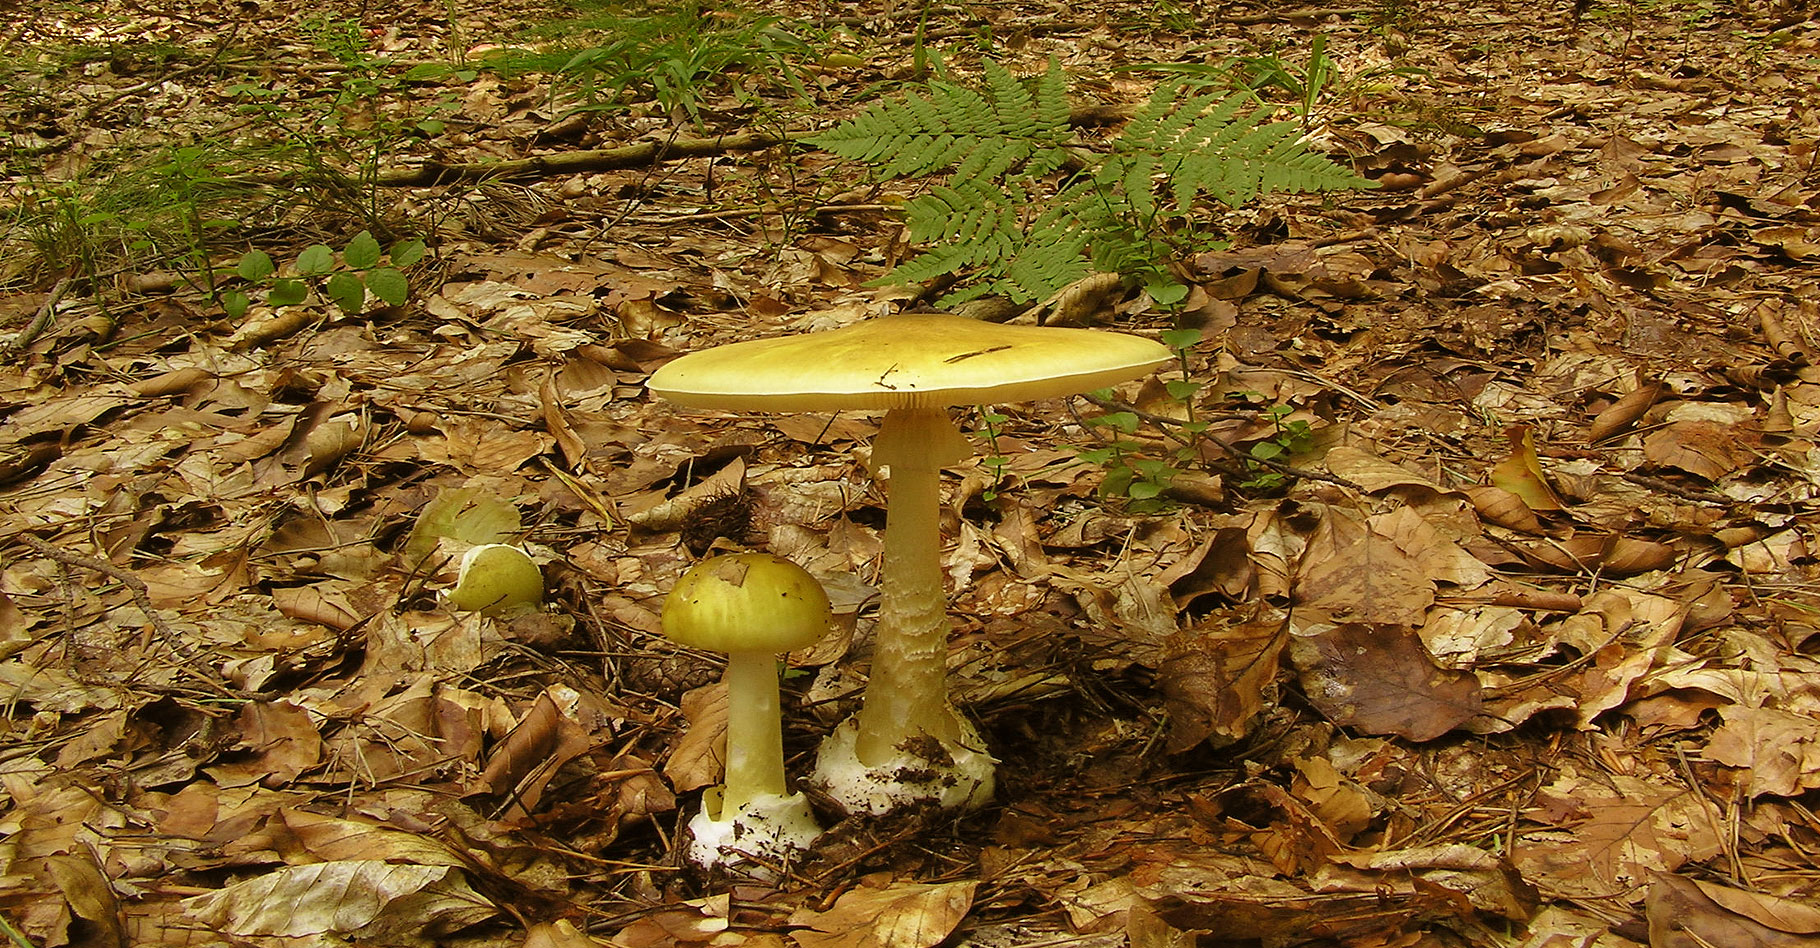 Les champignons vénéneux : amanites, coprin, gyromitre (fausse morille)...